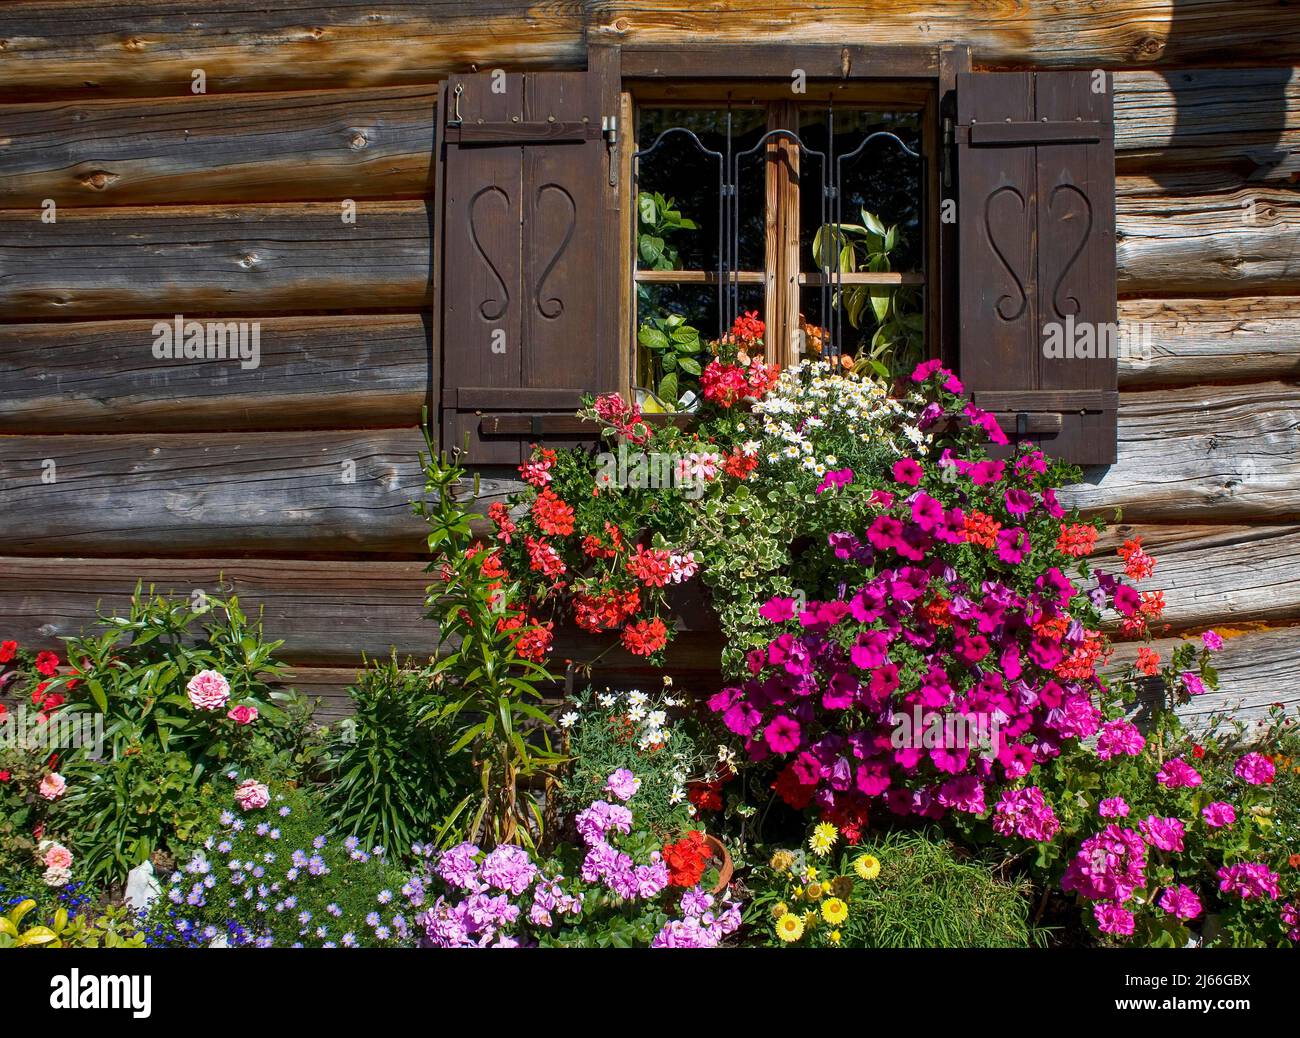 Hoelzernes Bauernhaus mit bunten Blumenfenster und Blumengarten, Holzfassade, Postalm, Salzkammergut, Land Salzburg, Oesterreich Stock Photo